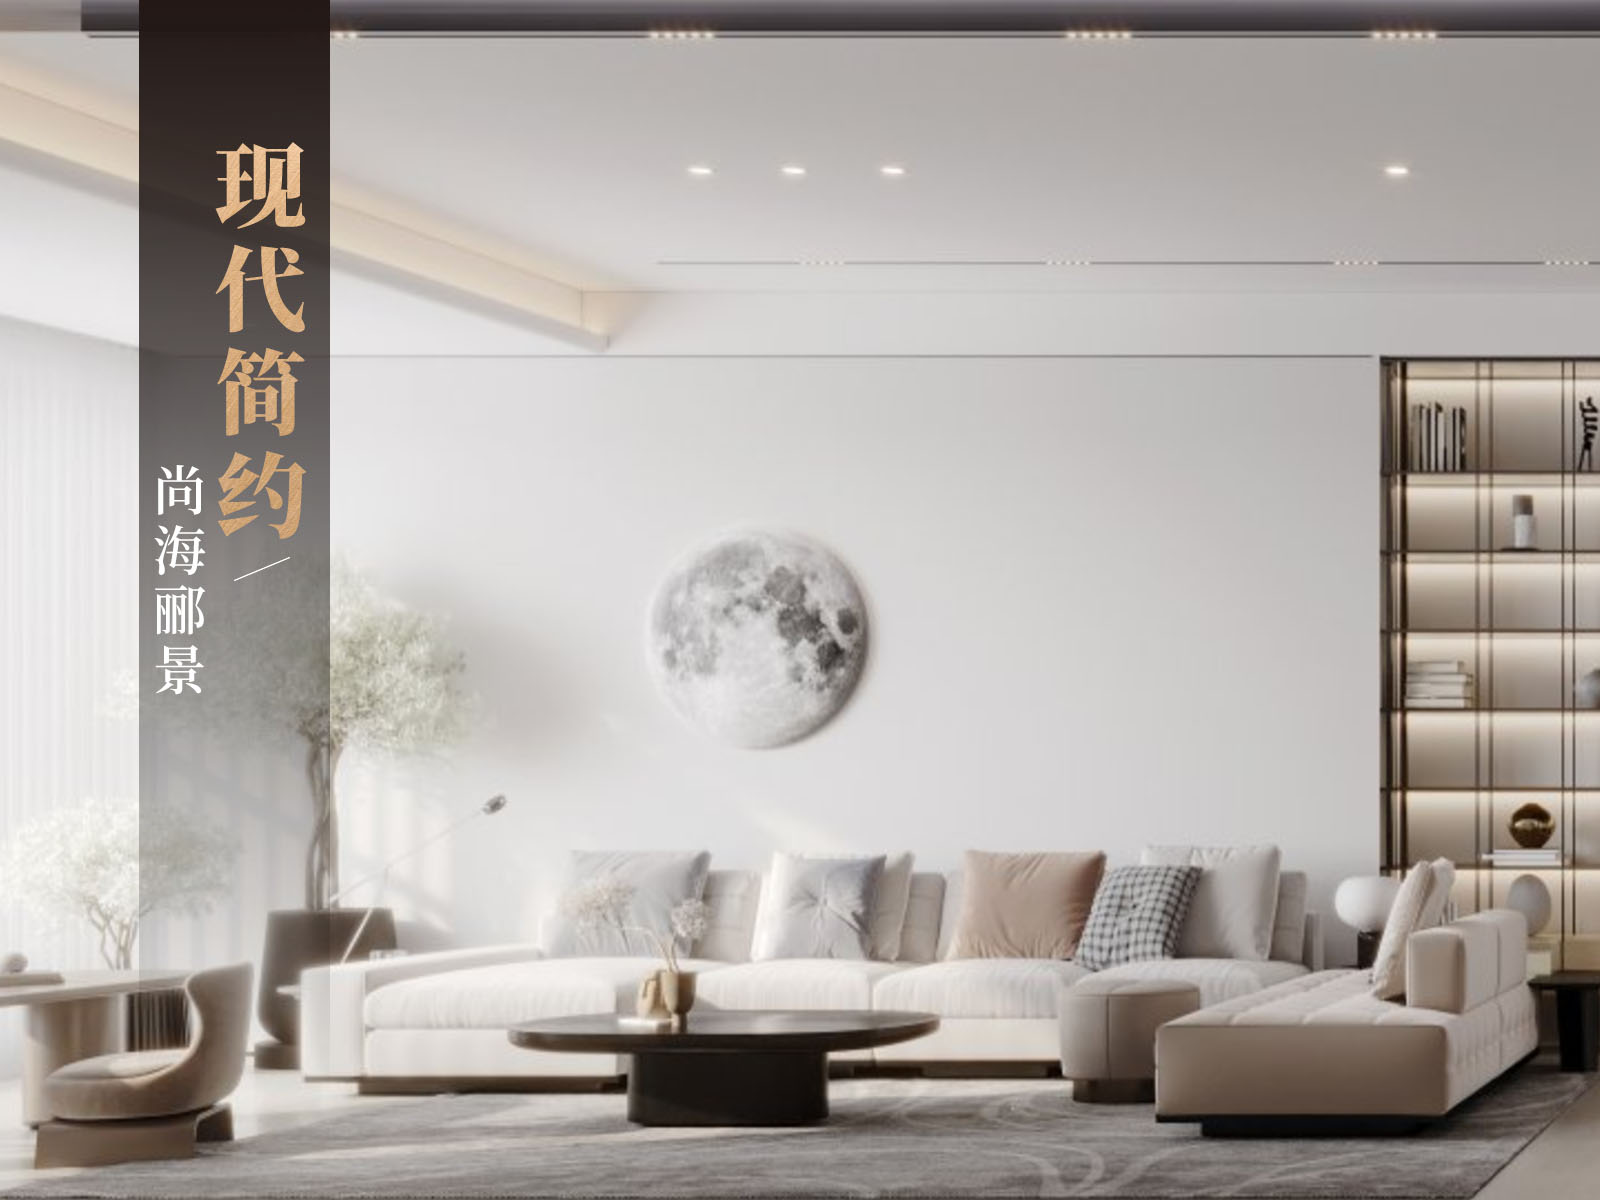 尚海酈景150平裝修效果圖